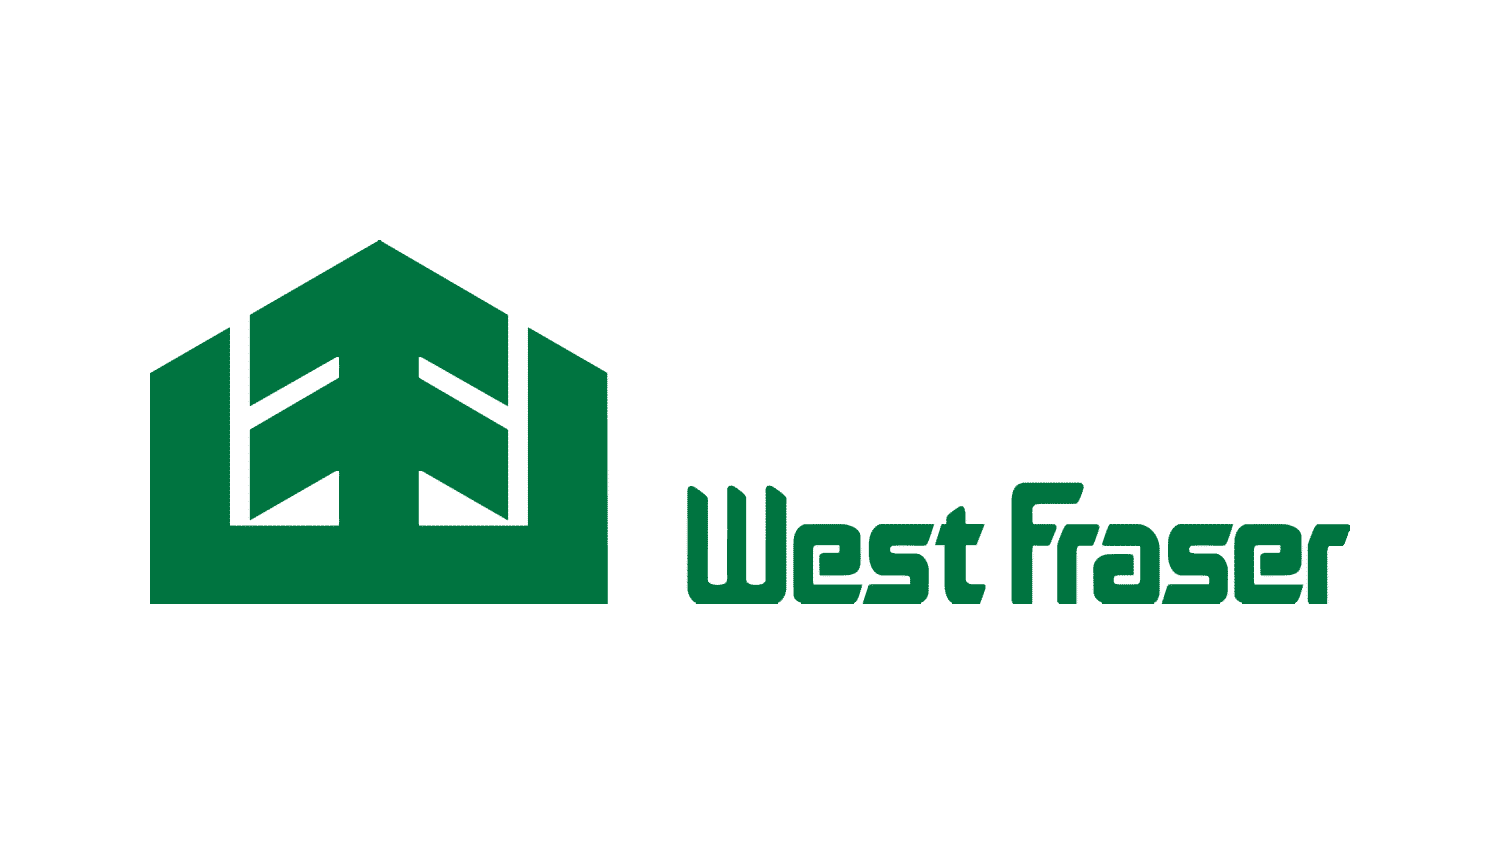 west fraser timber logo